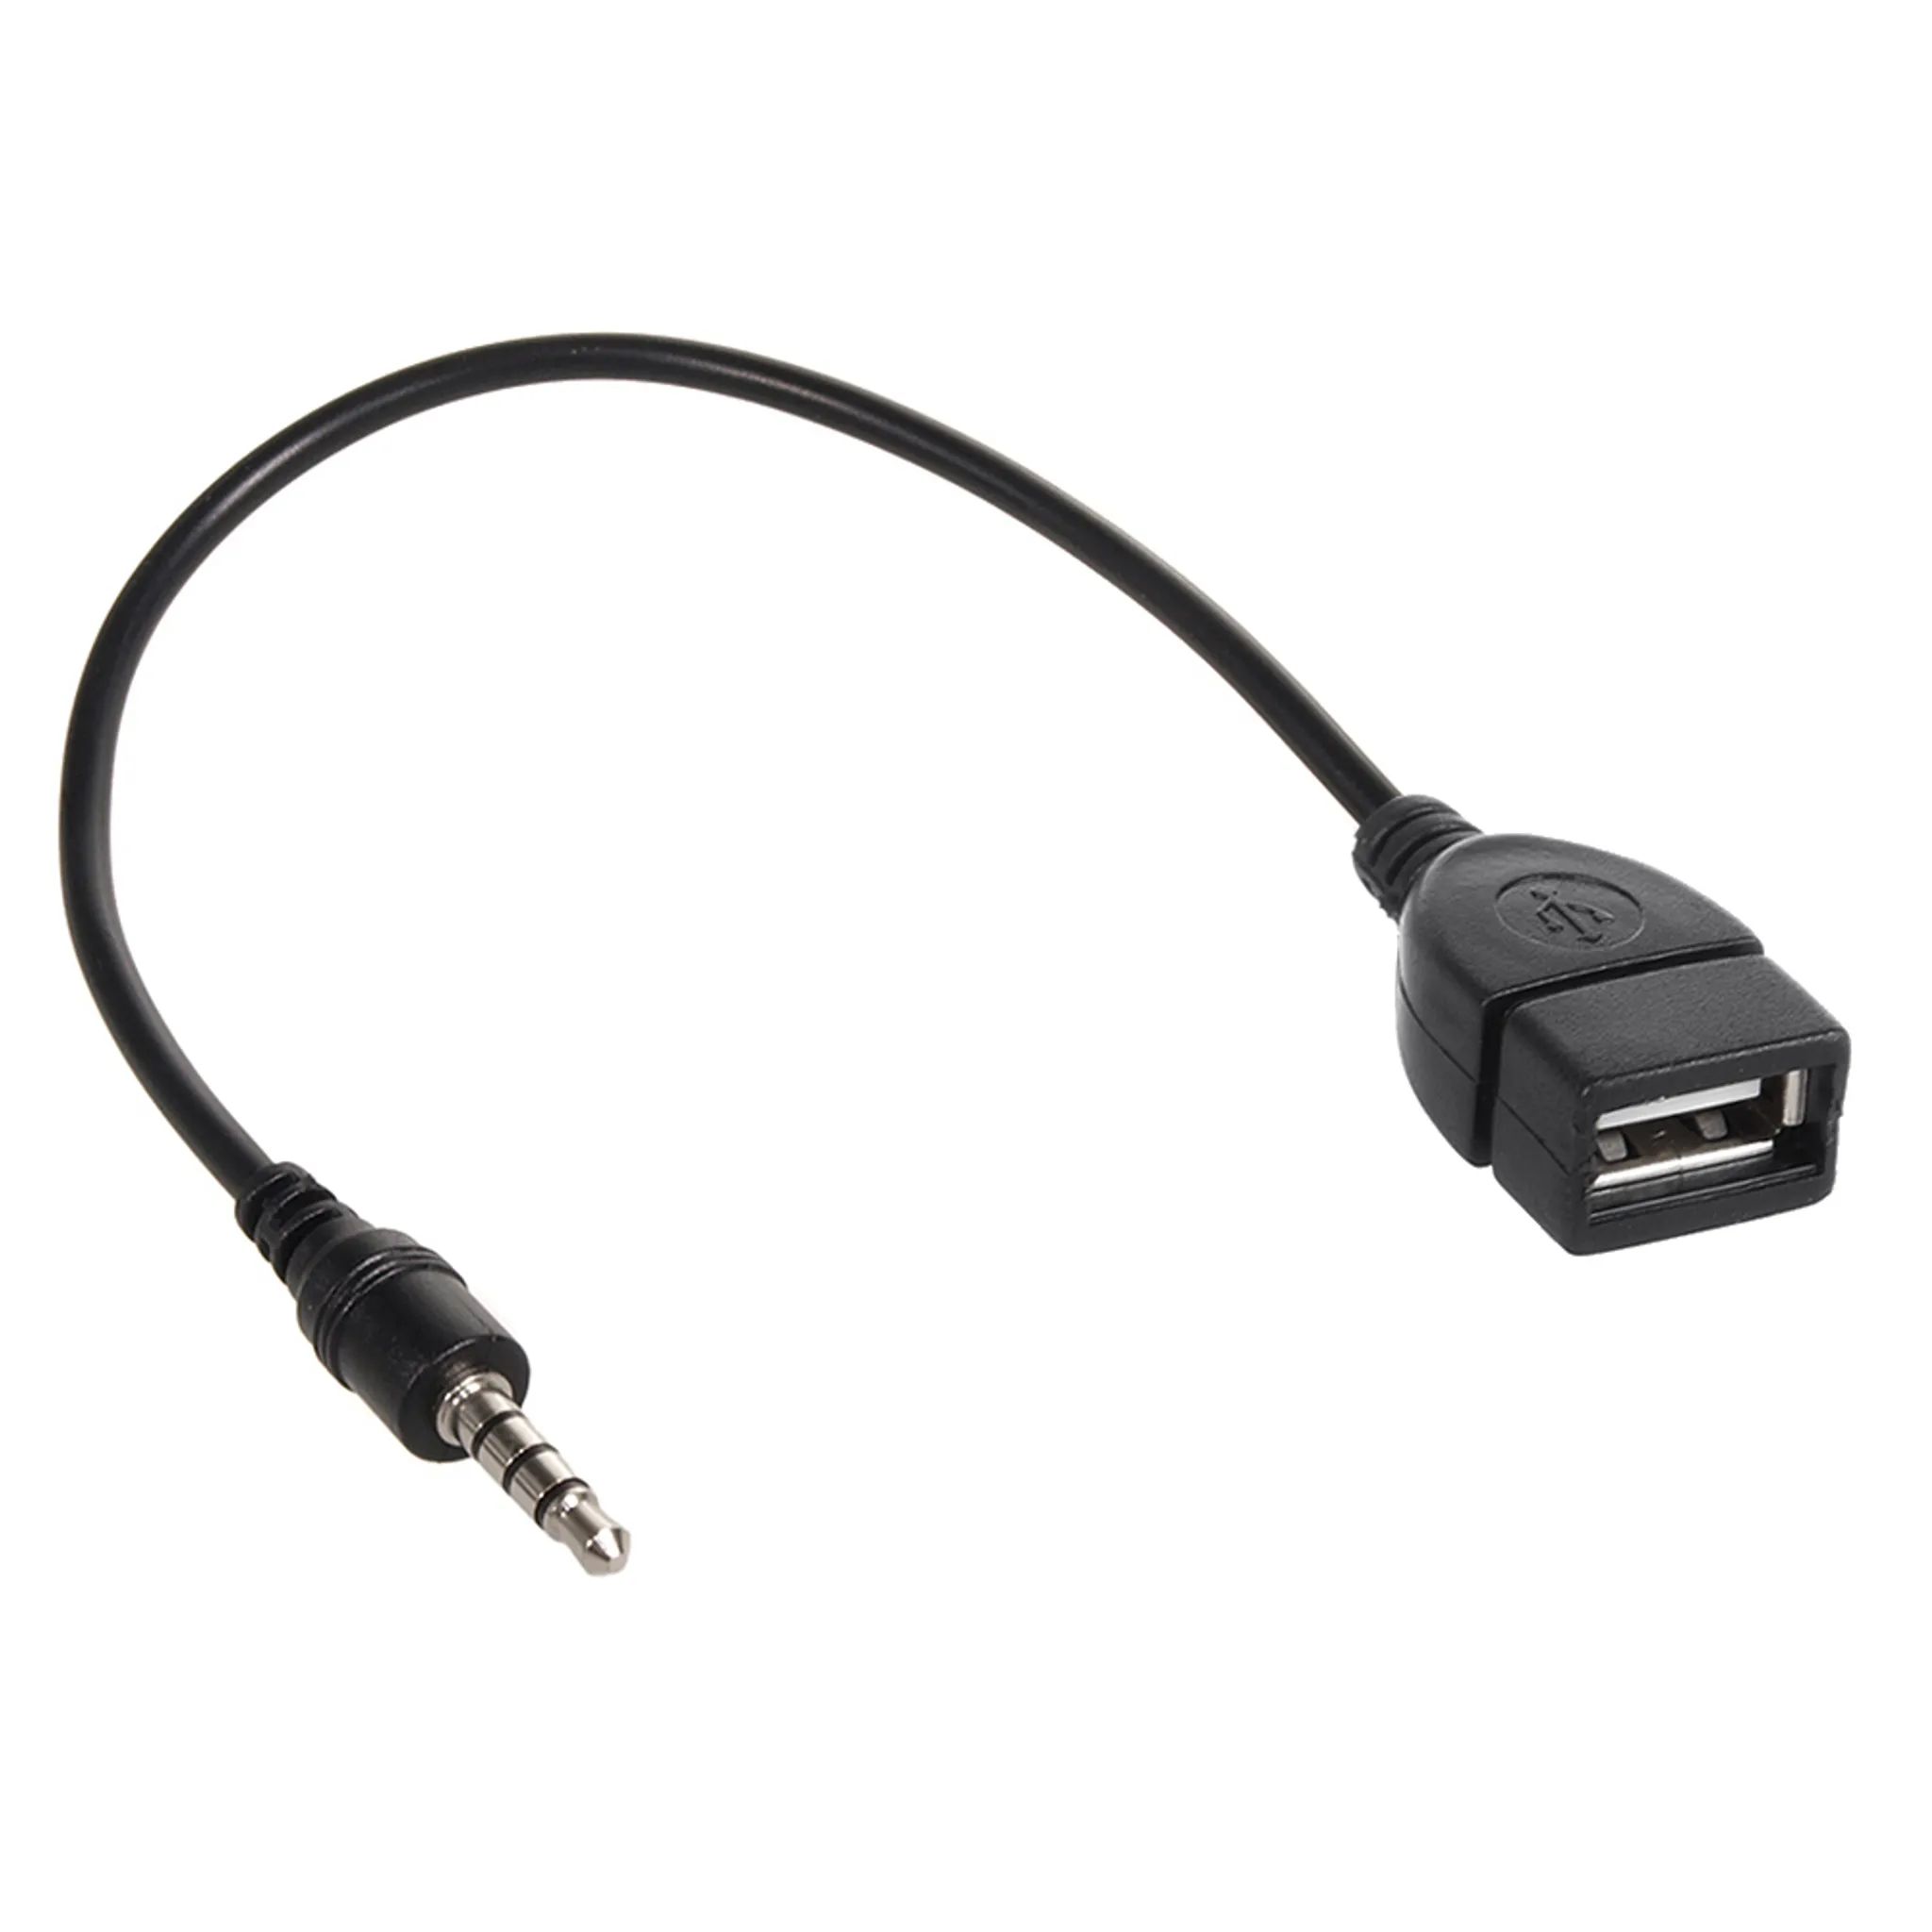 Bolwins K04S USB auf Aux Audio Adapter, USB OTG Adapterkabel Jack 3,5mm  Klinken Stecker AUX auf USB A Buchse Steckverbinder für Car Stereos,  Auto-GPS